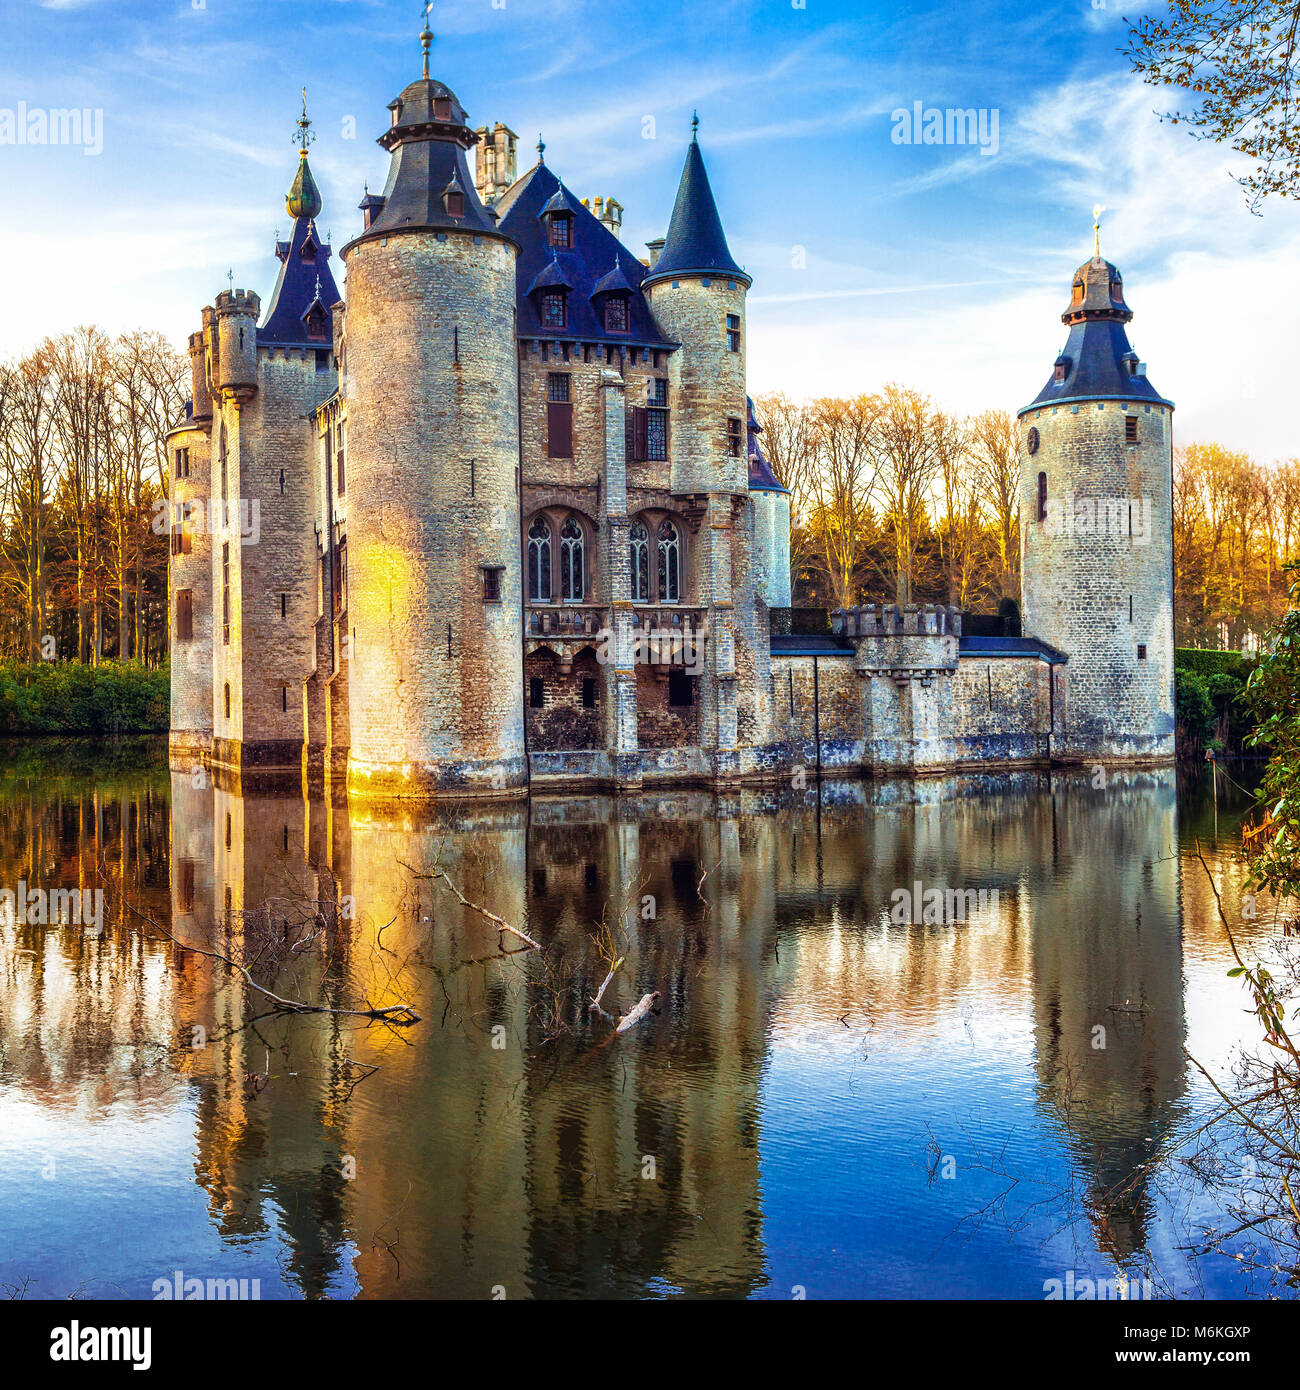 Beautiful Borrekens castle,near Antwerpen,Belgium, Stock Photo